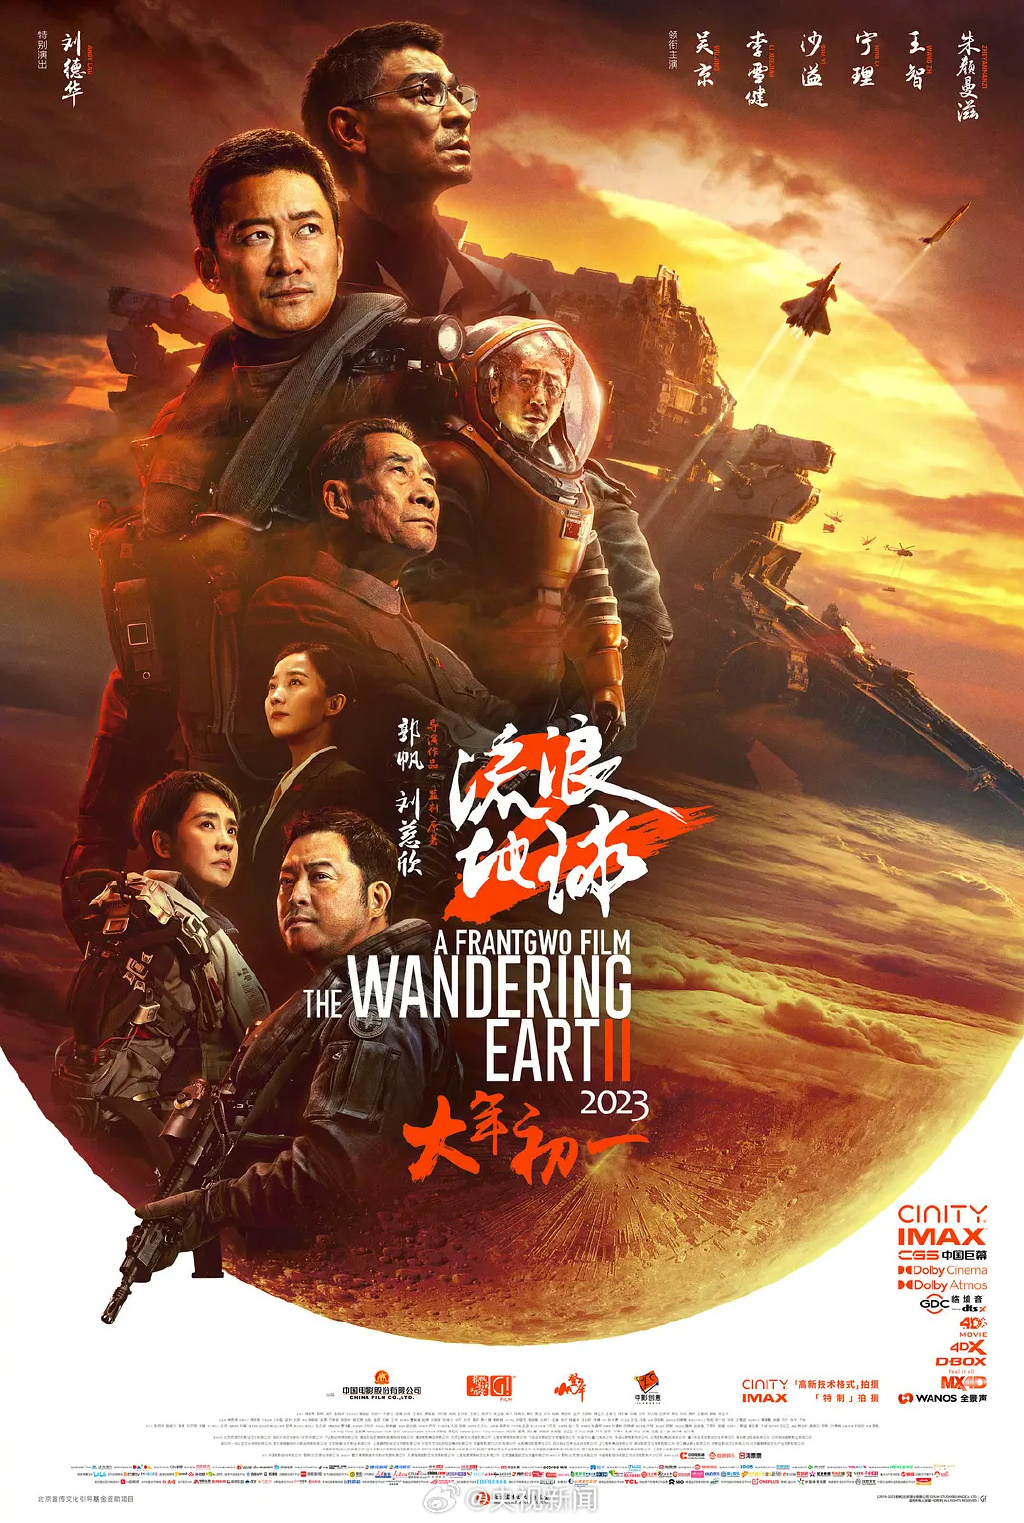 由劉德華、吳京主演的《流浪地球2》亦入圍「最佳故事片」。